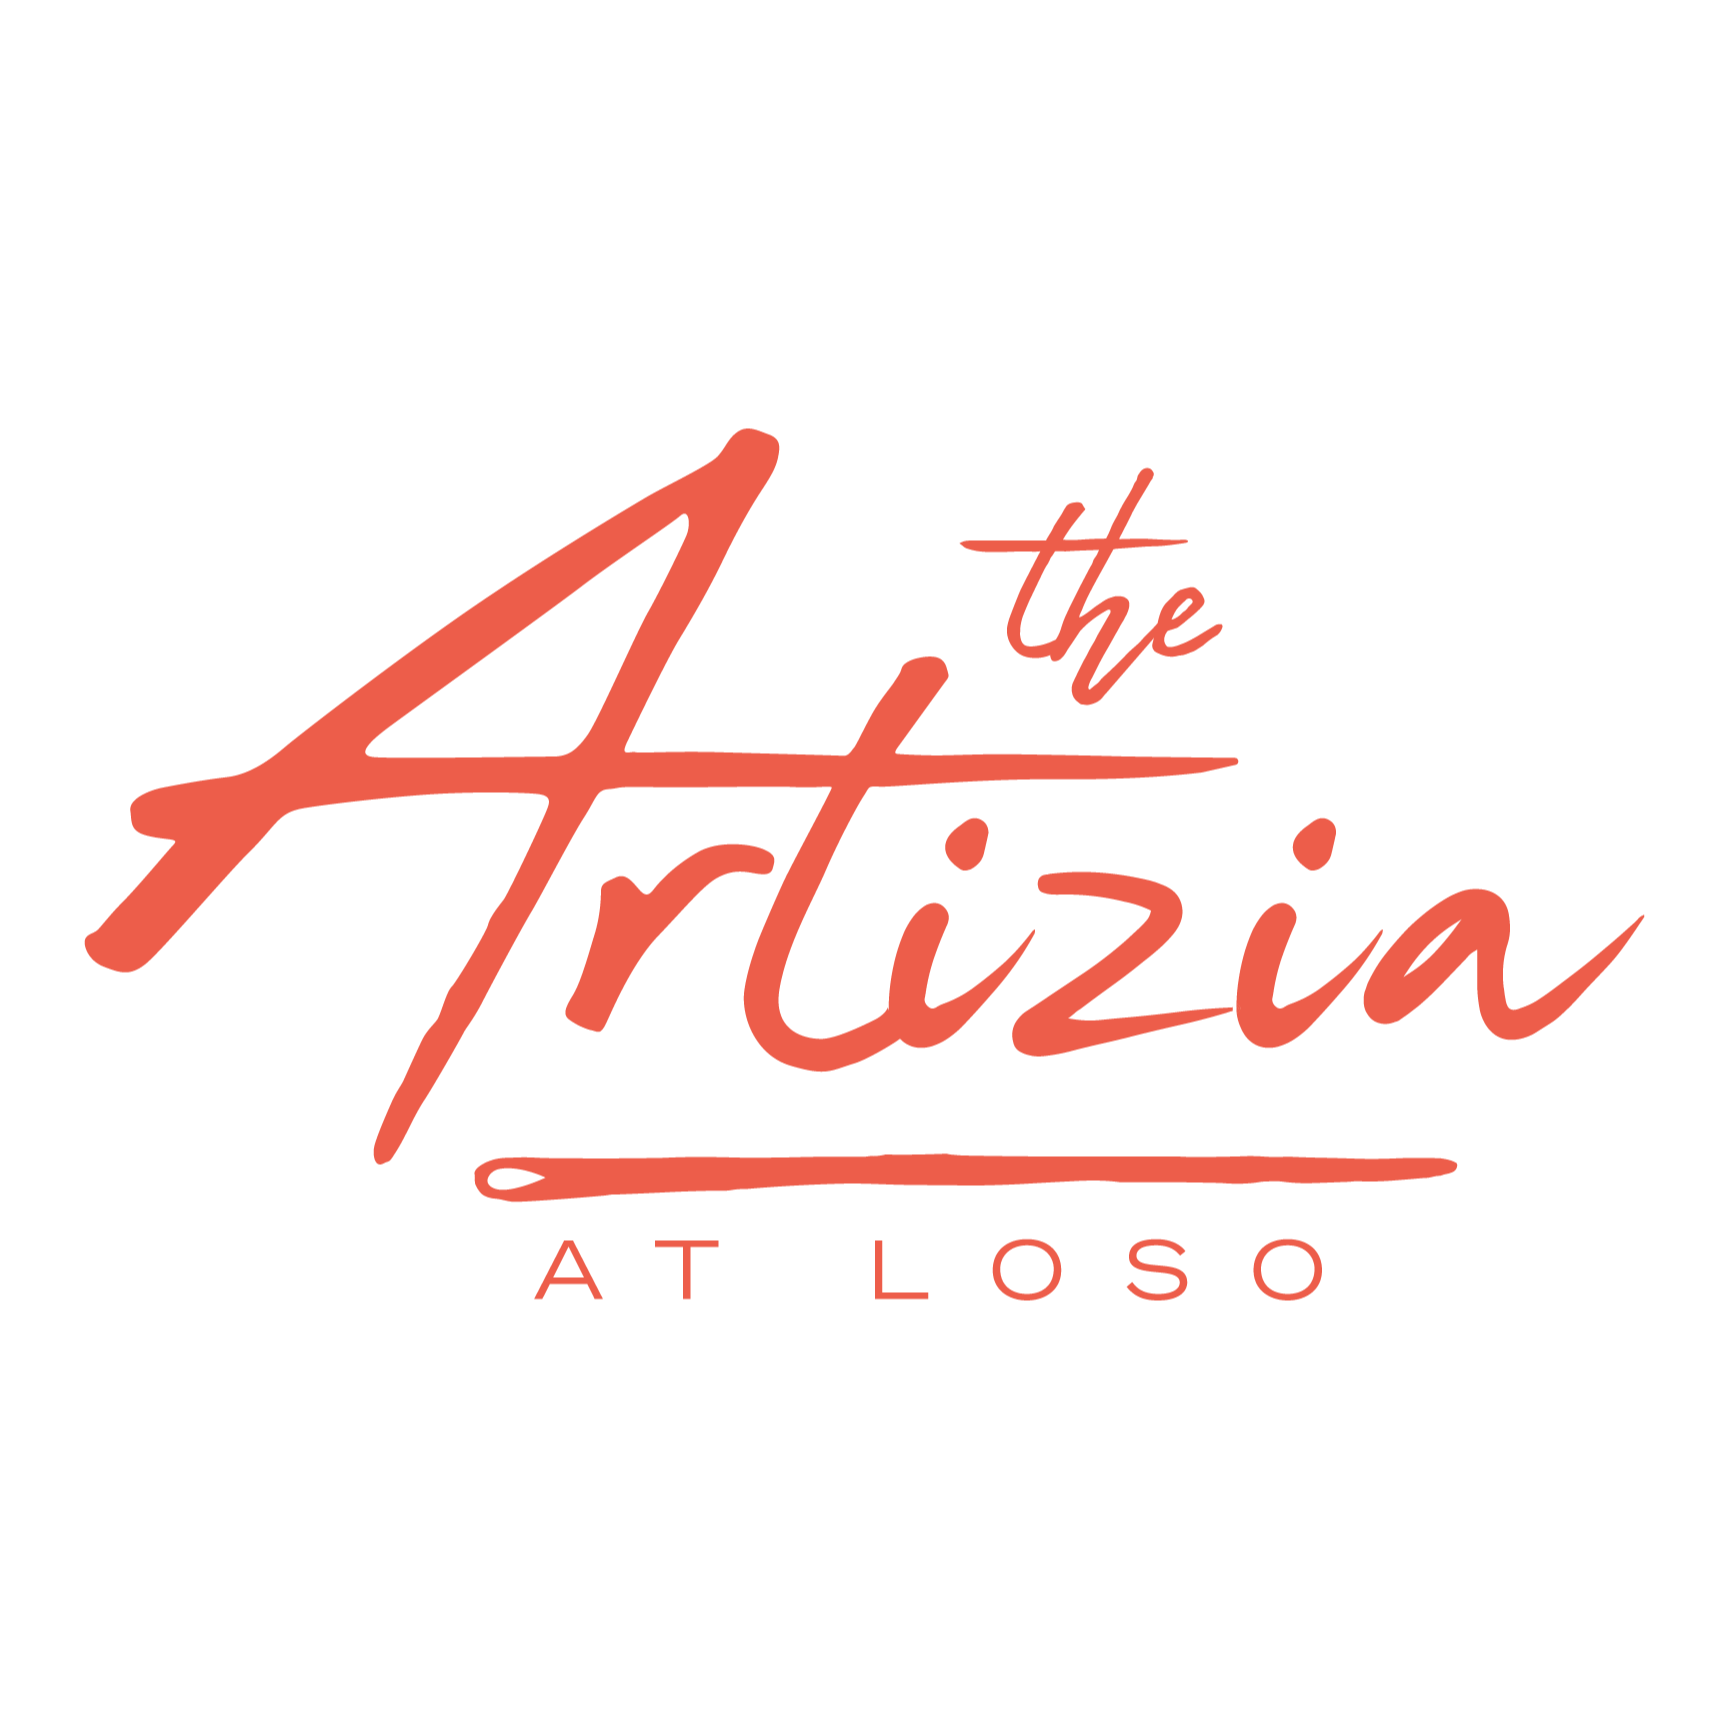 The Artizia at LoSo